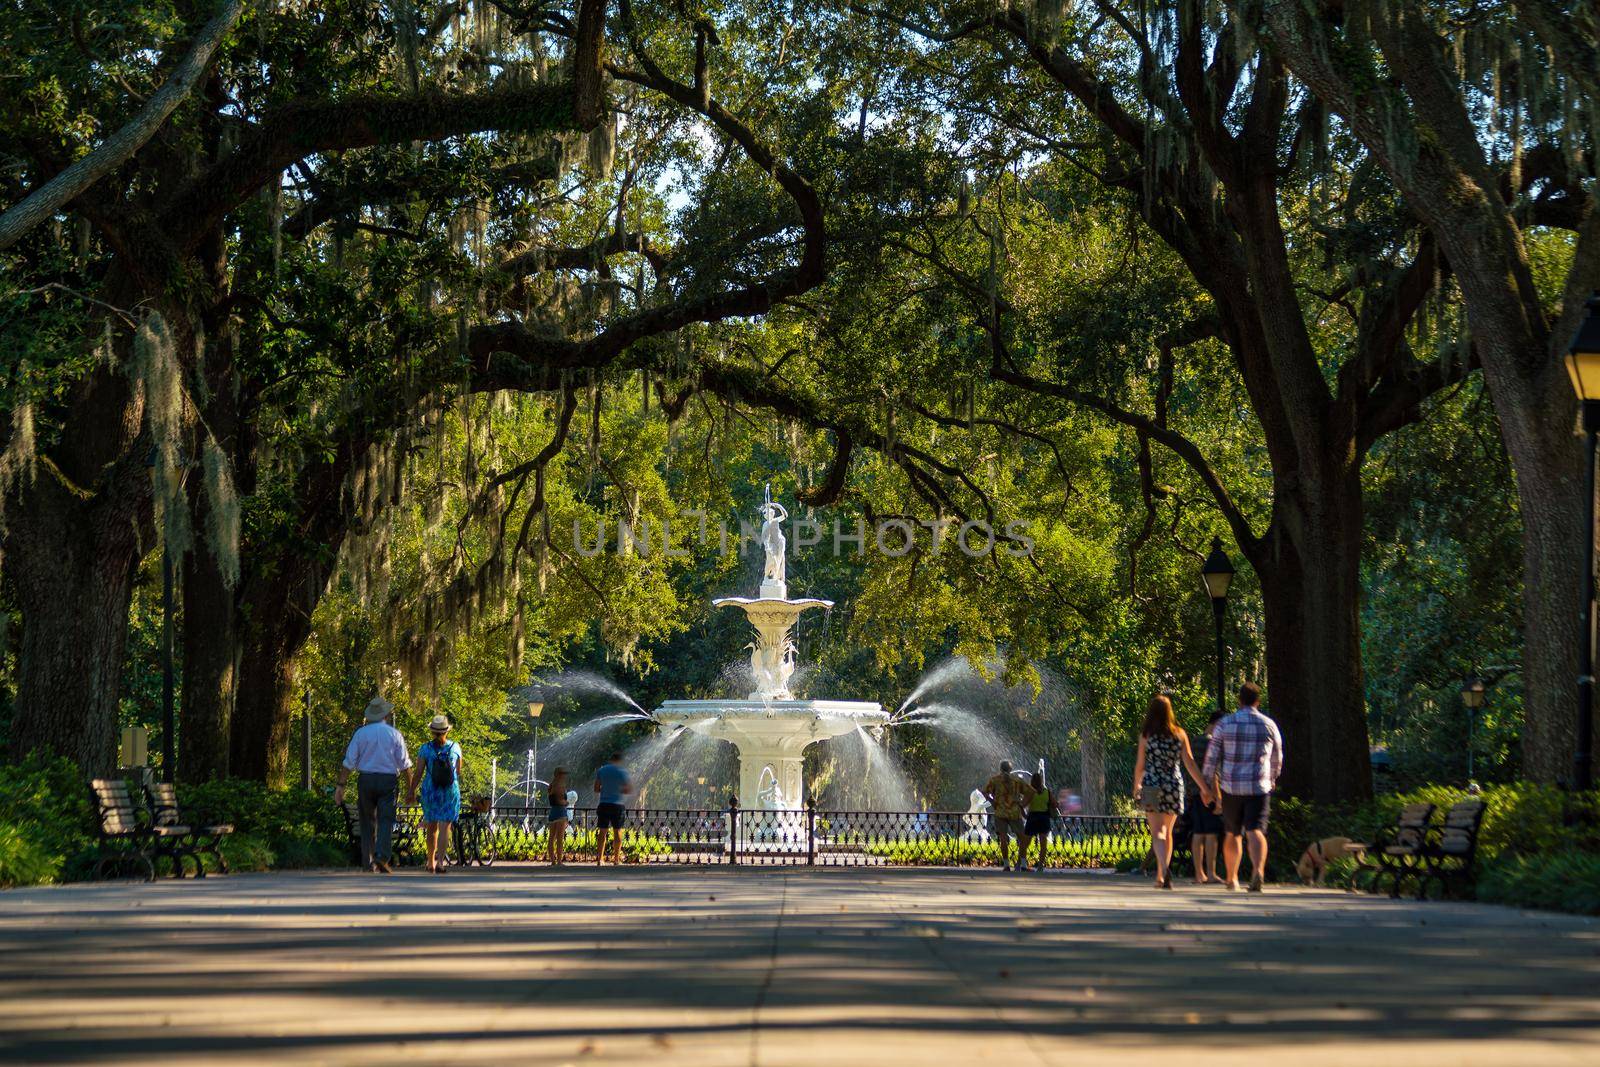 Famous historic Forsyth Fountain in Savannah, Georgia USA

